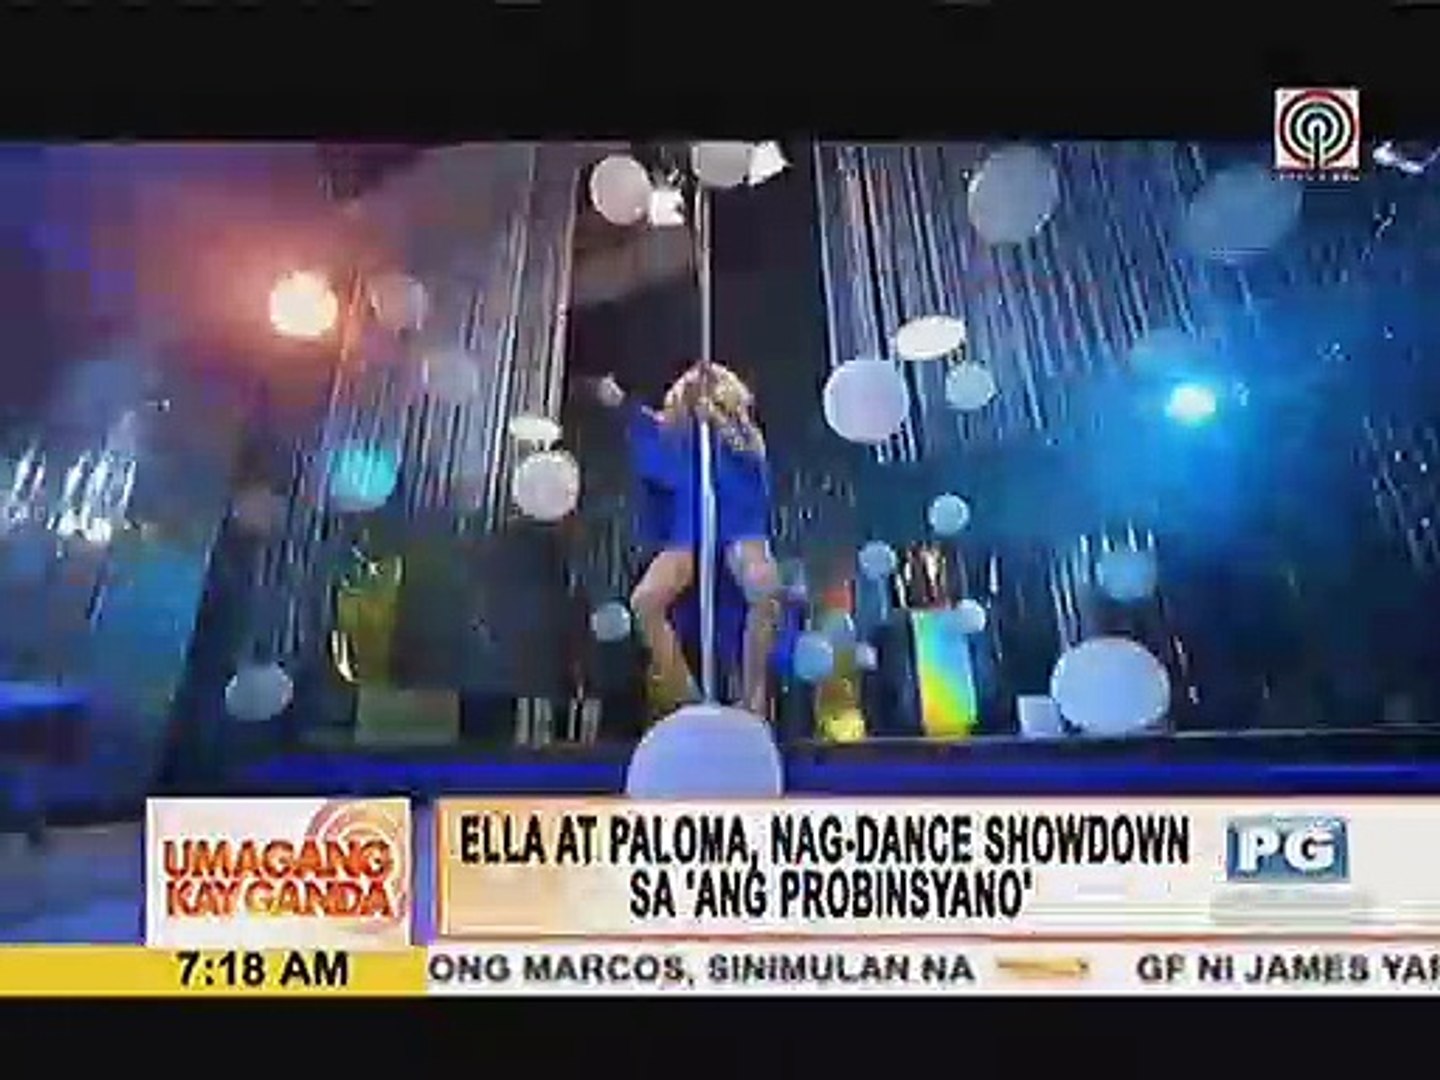 Ella at Paloma, nag-dance showdown sa